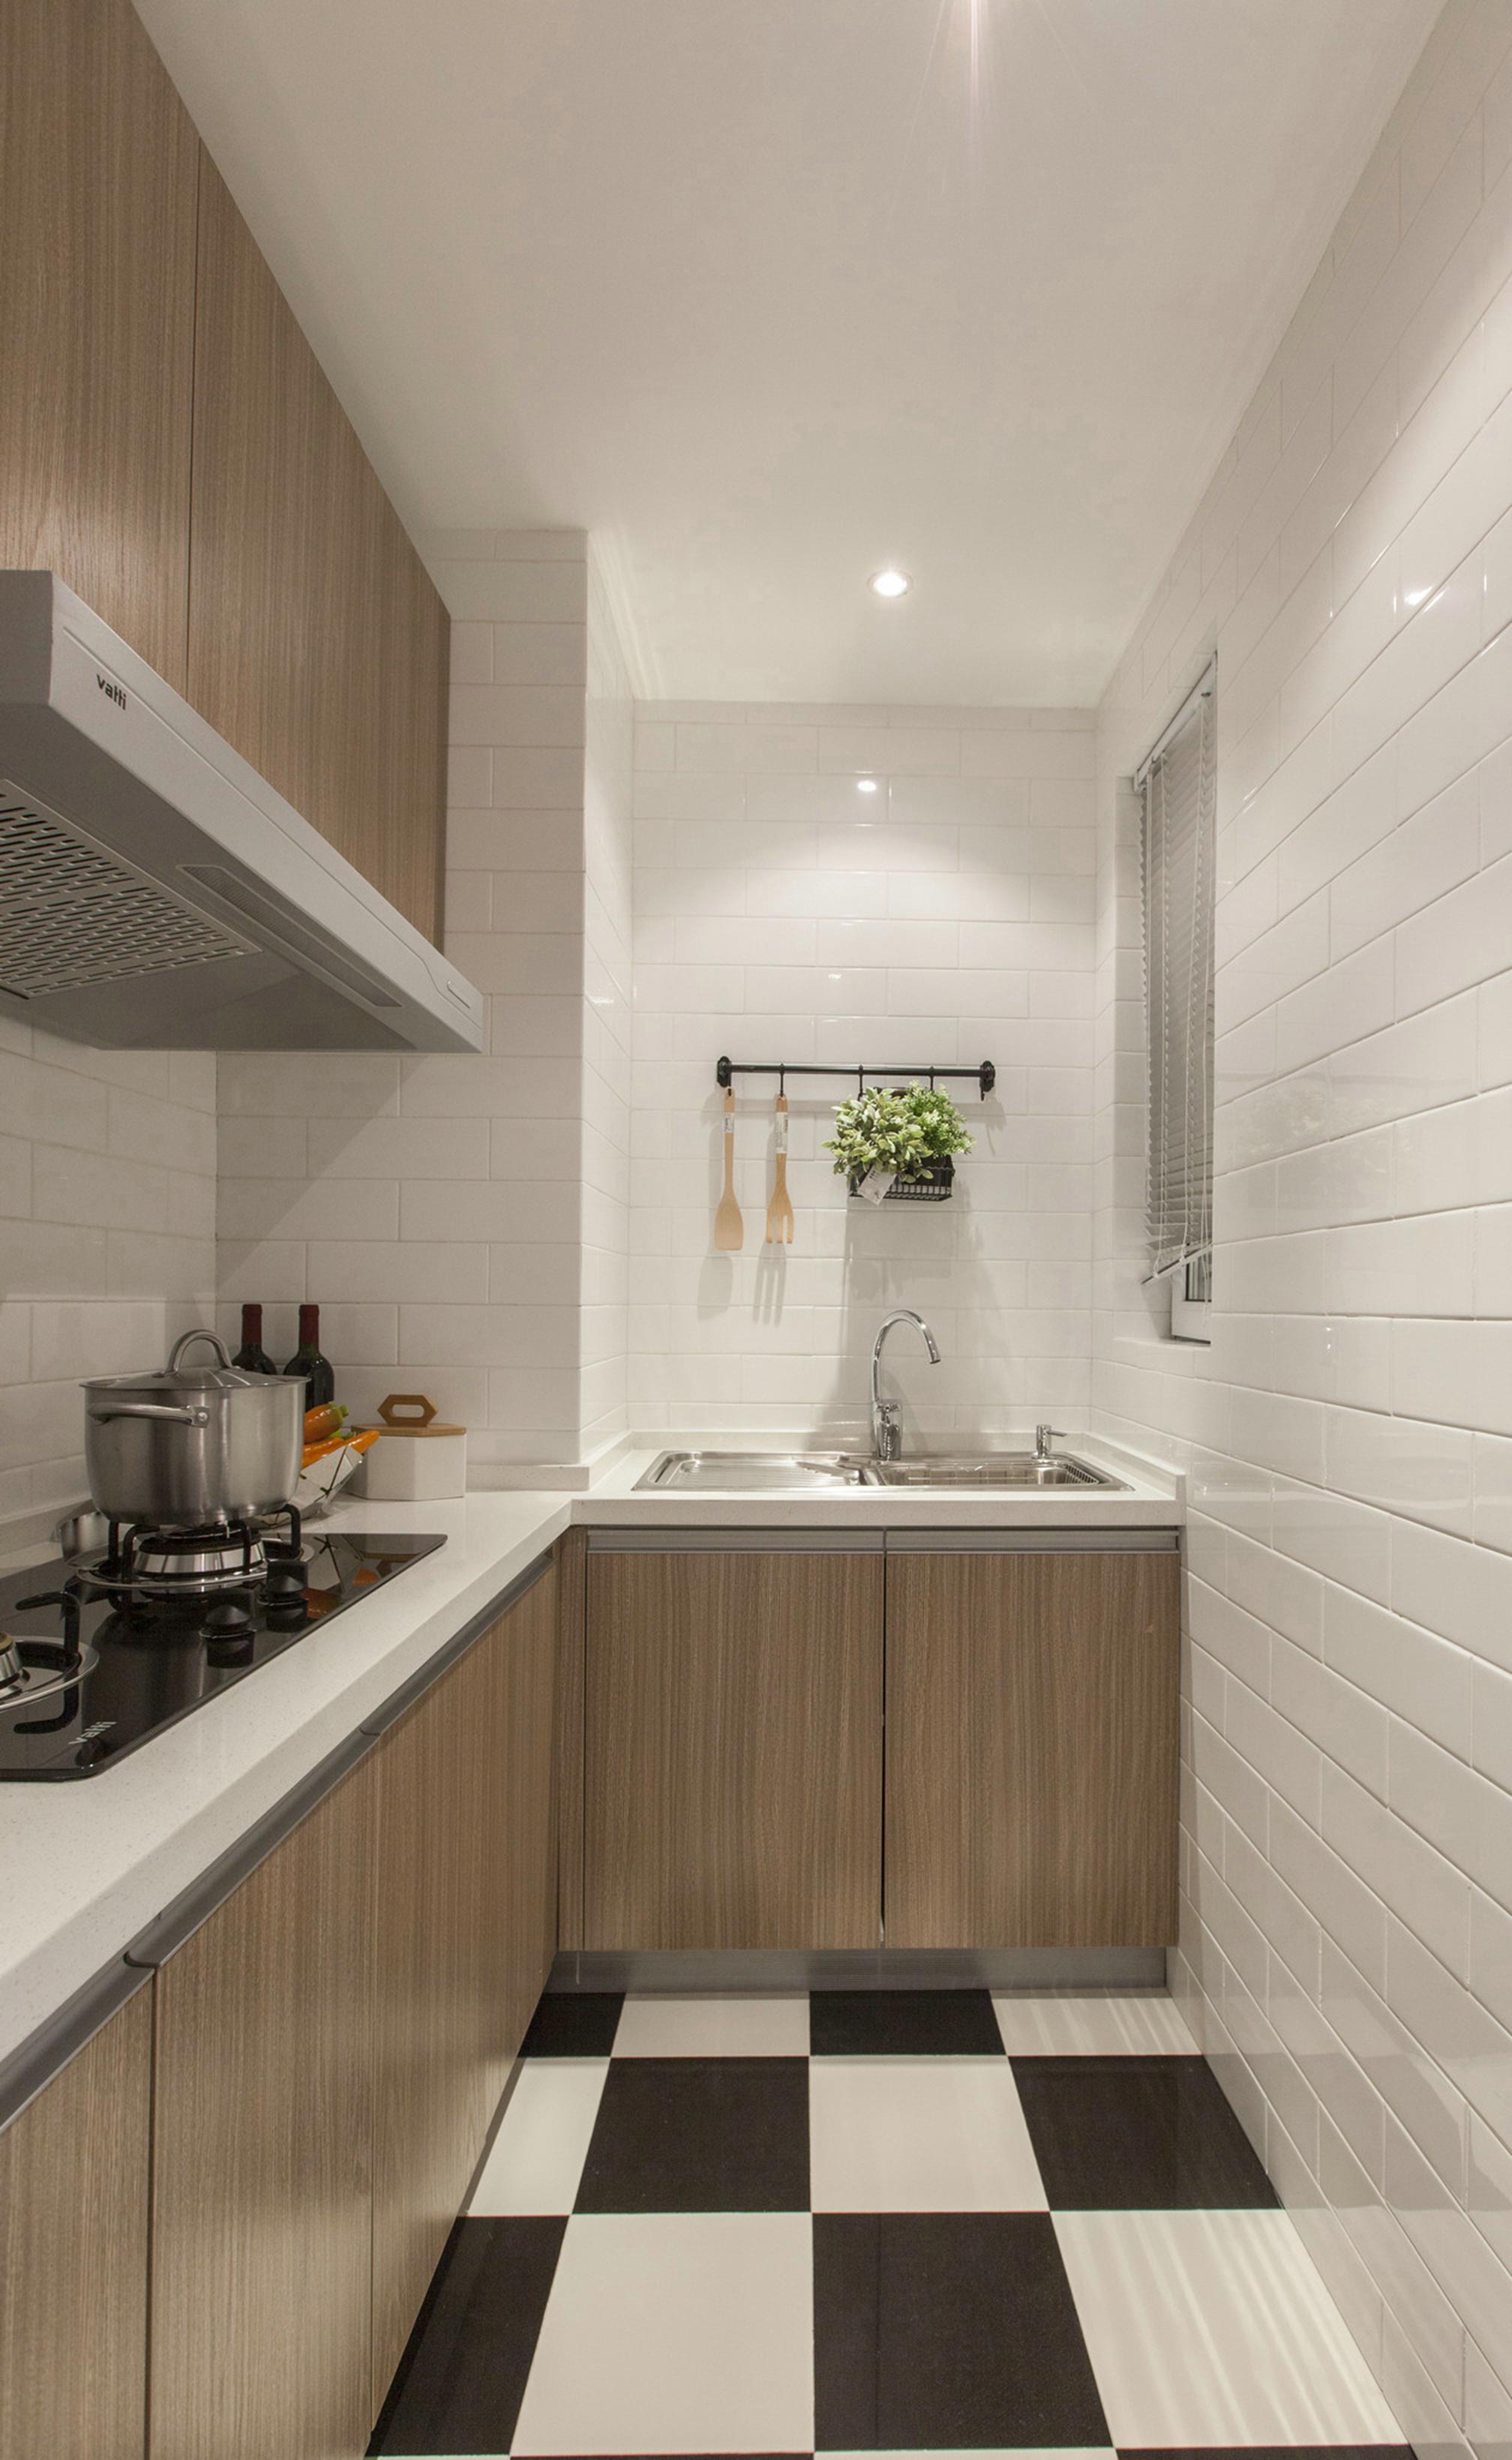 橱柜、地板材质、照明等元素的介入，赋予了厨房空间强烈的画面感。